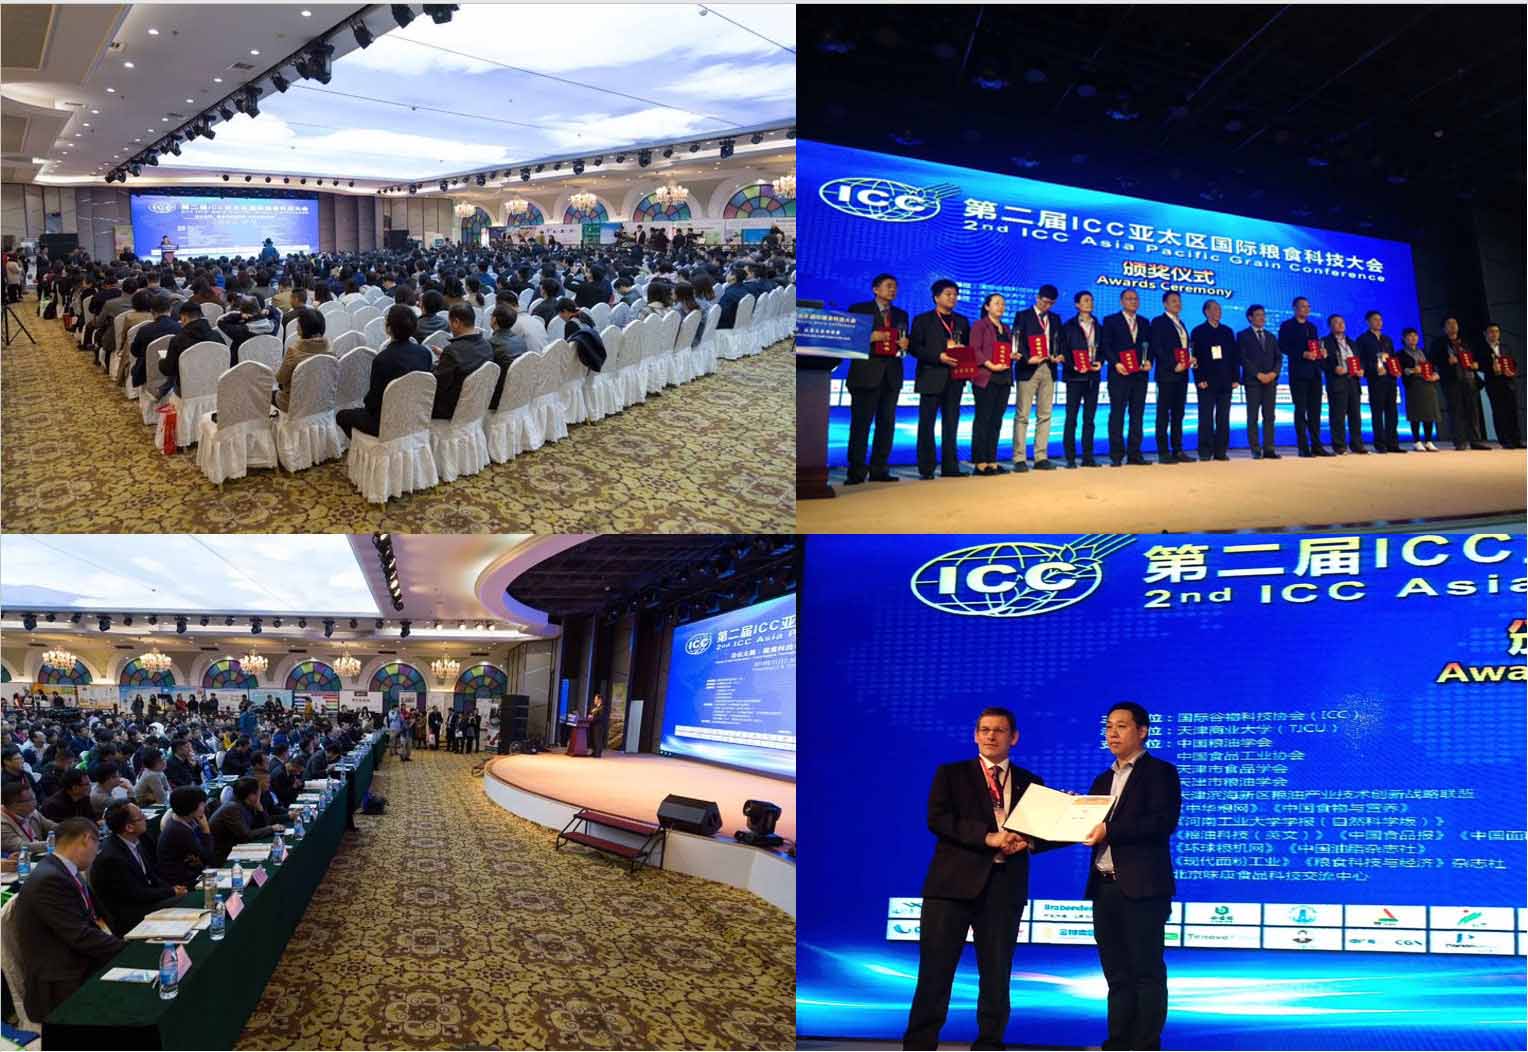 天翔飞域助力第二届ICC亚太区国际粮食科技大会